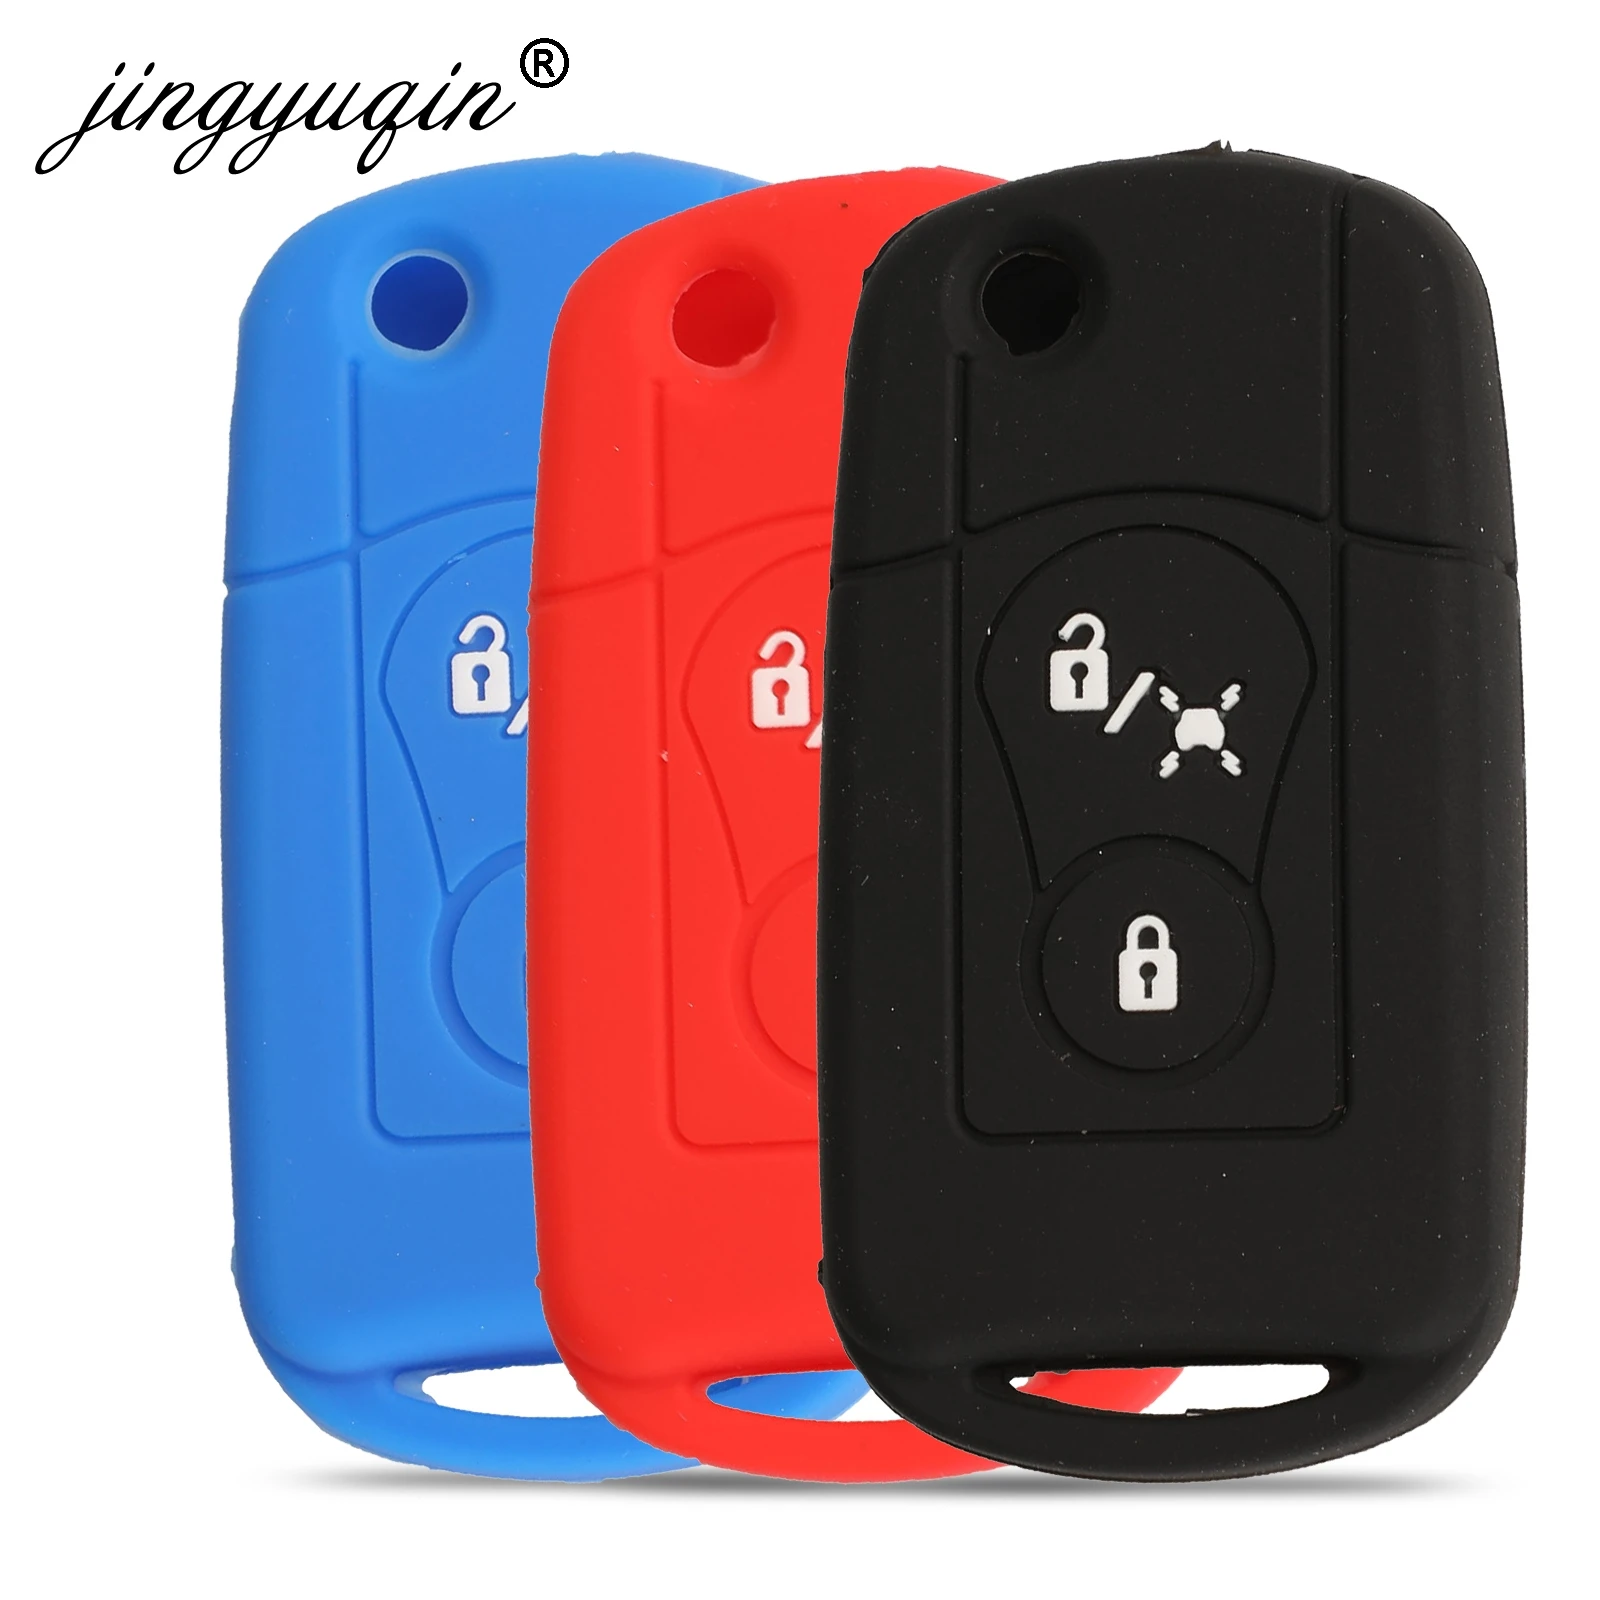 

jingyuqin 30pcs Skin Silicone Flip Remote Key Case fit for Ssangyong Actyon Kyron Rexton 2 Button Folding Car Key Cover Fob